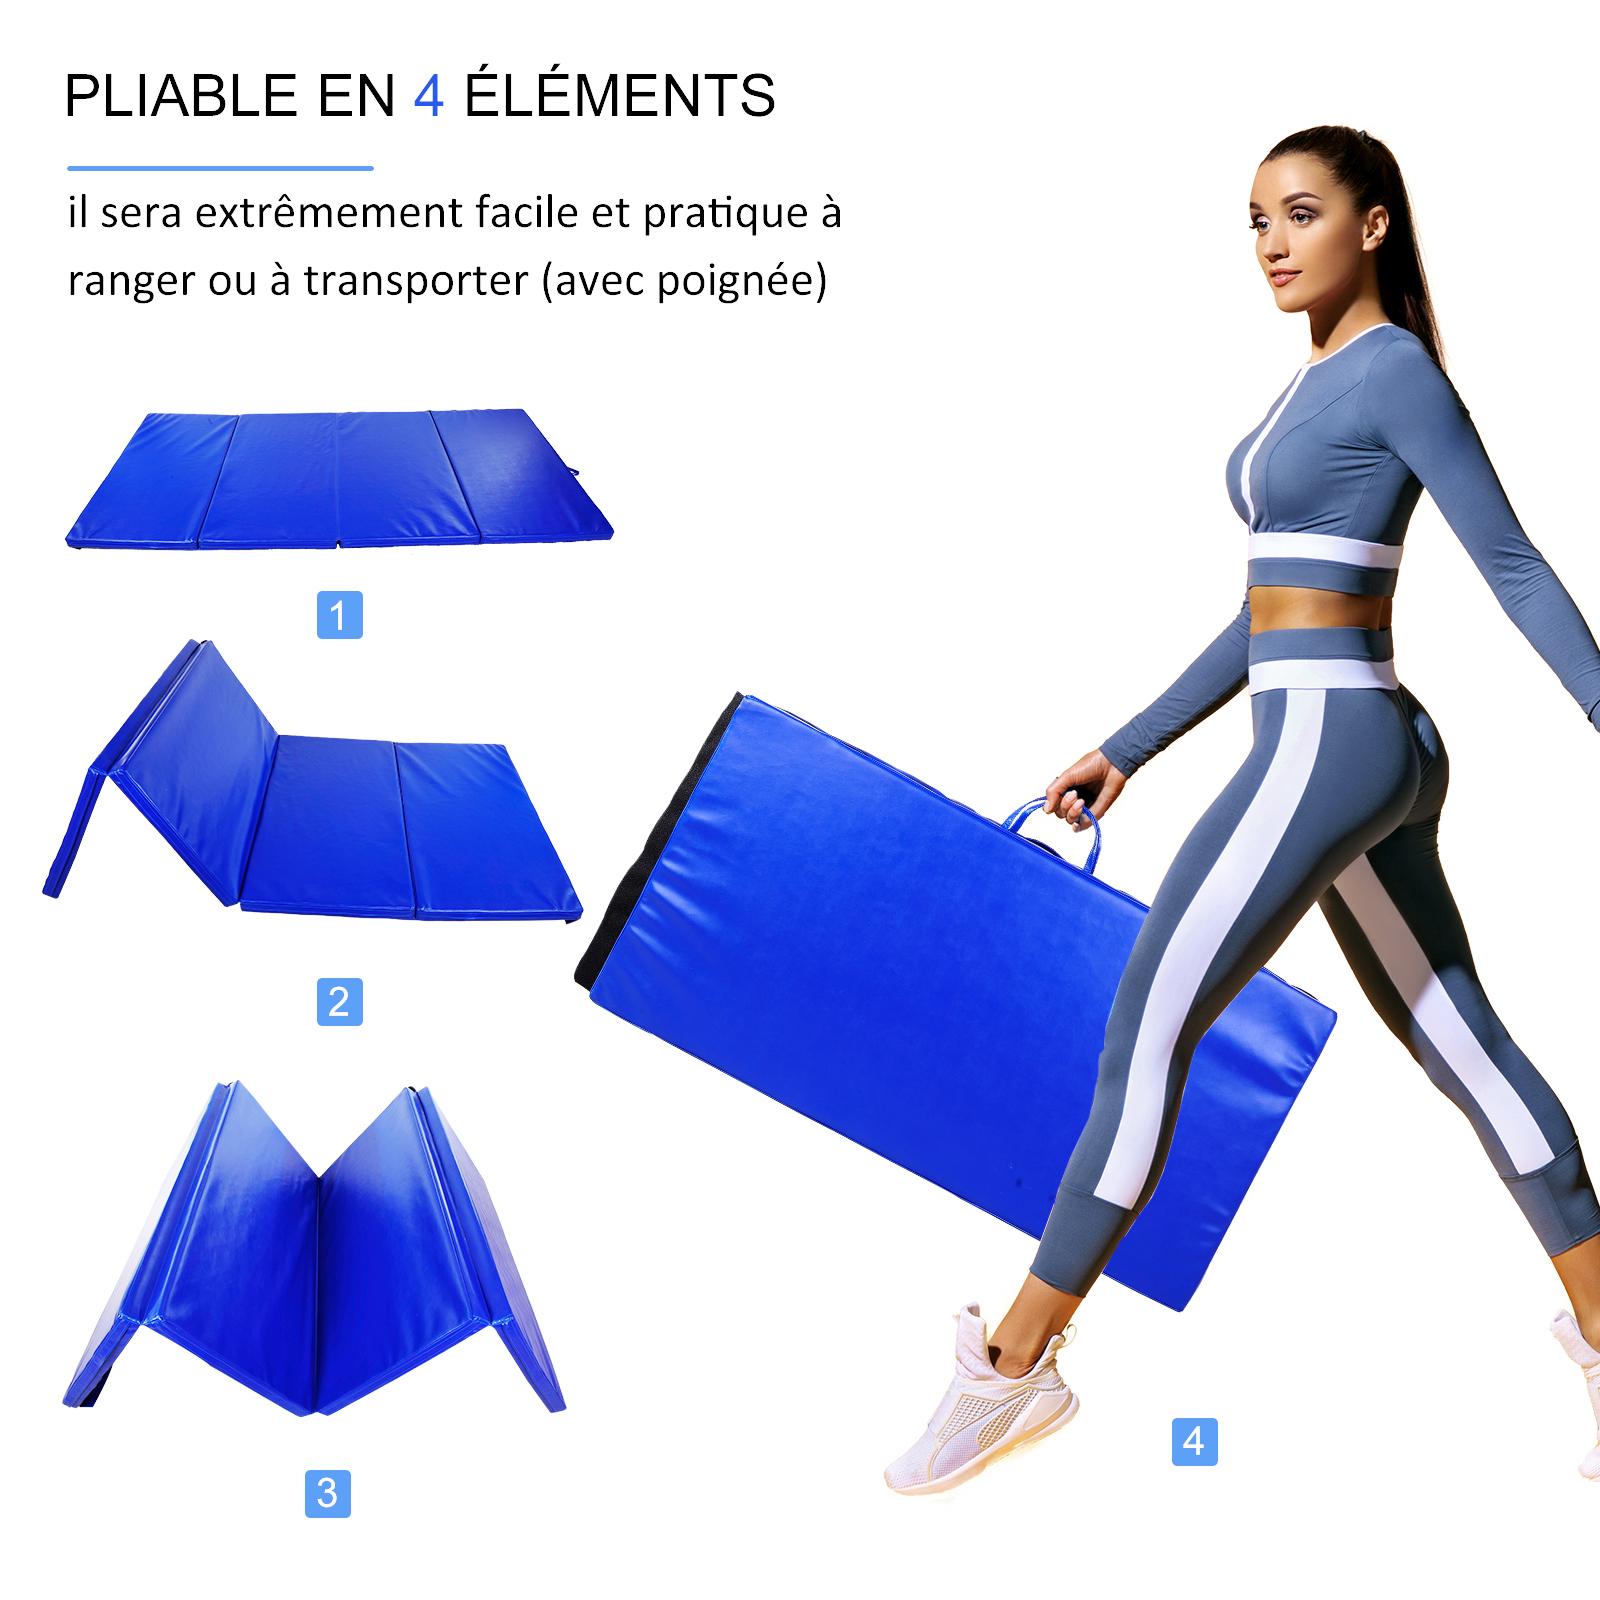 HOMCOM Tapis de Sol Gym Fitness Epais Portable 3m Bleu natte matelas pliable  10 pieds 305 x 122 cm 